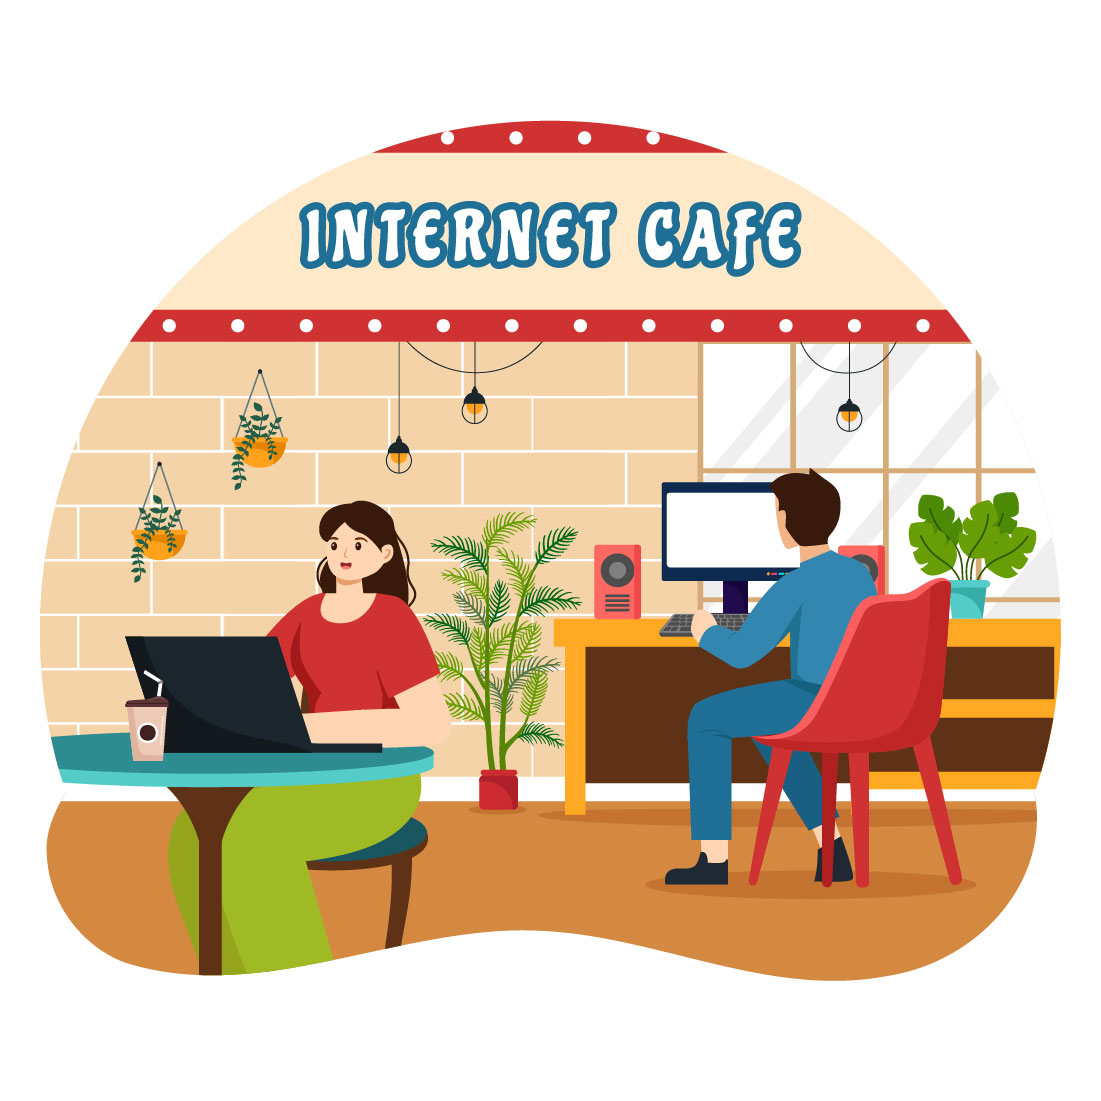 8 Internet Cafe Illustration preview image.